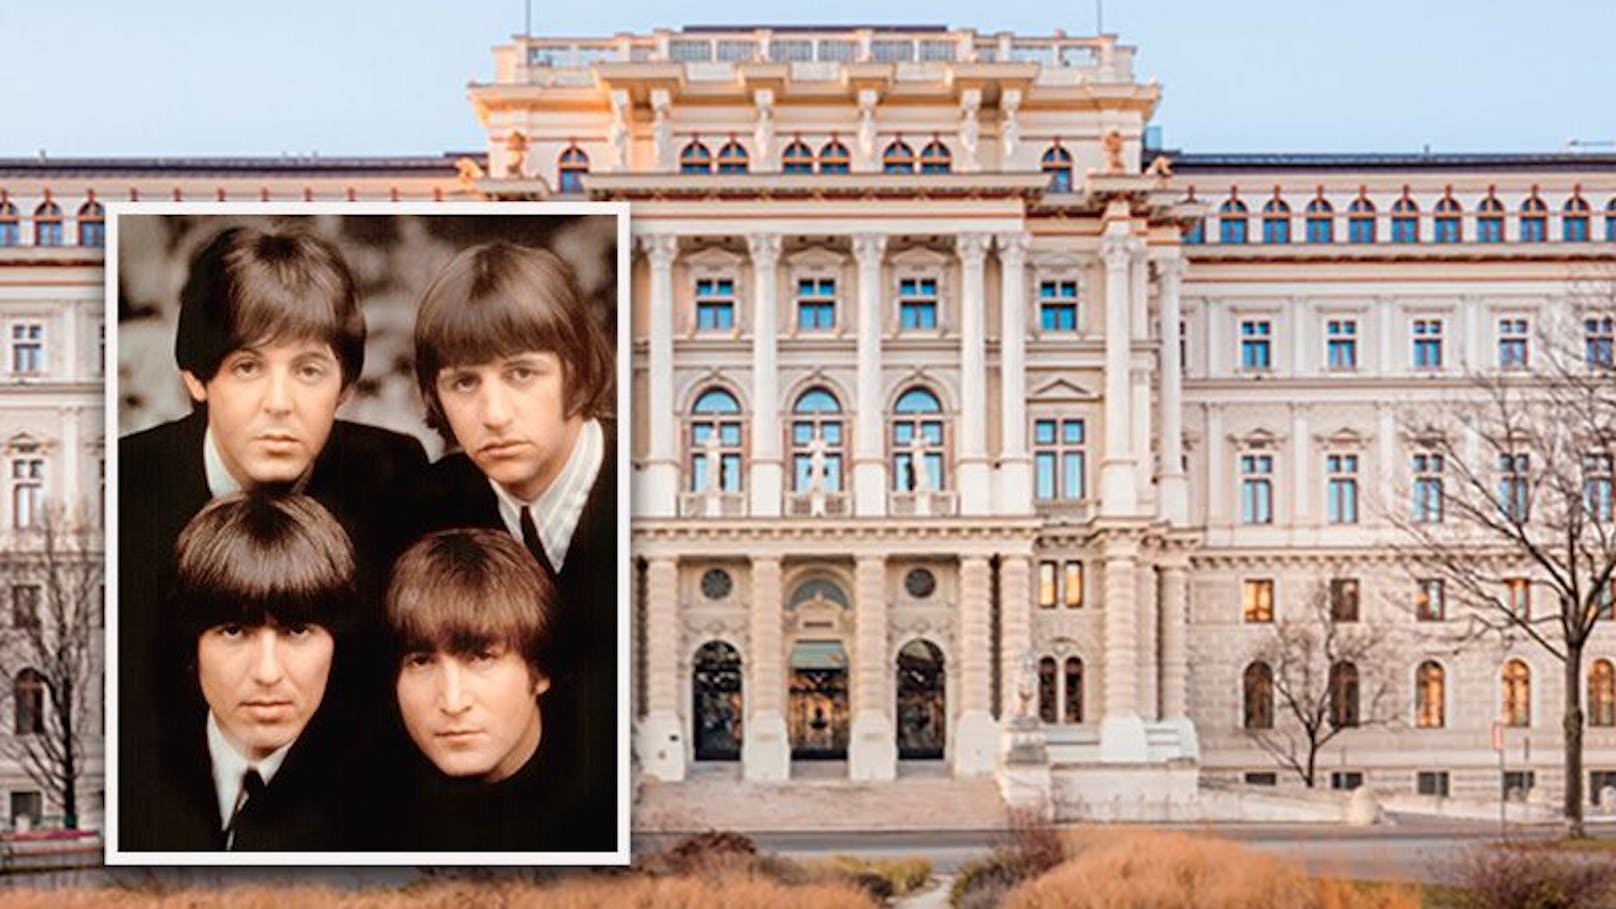 Beatles-Film abgekupfert? Wiener klagt auf 125.000 Euro